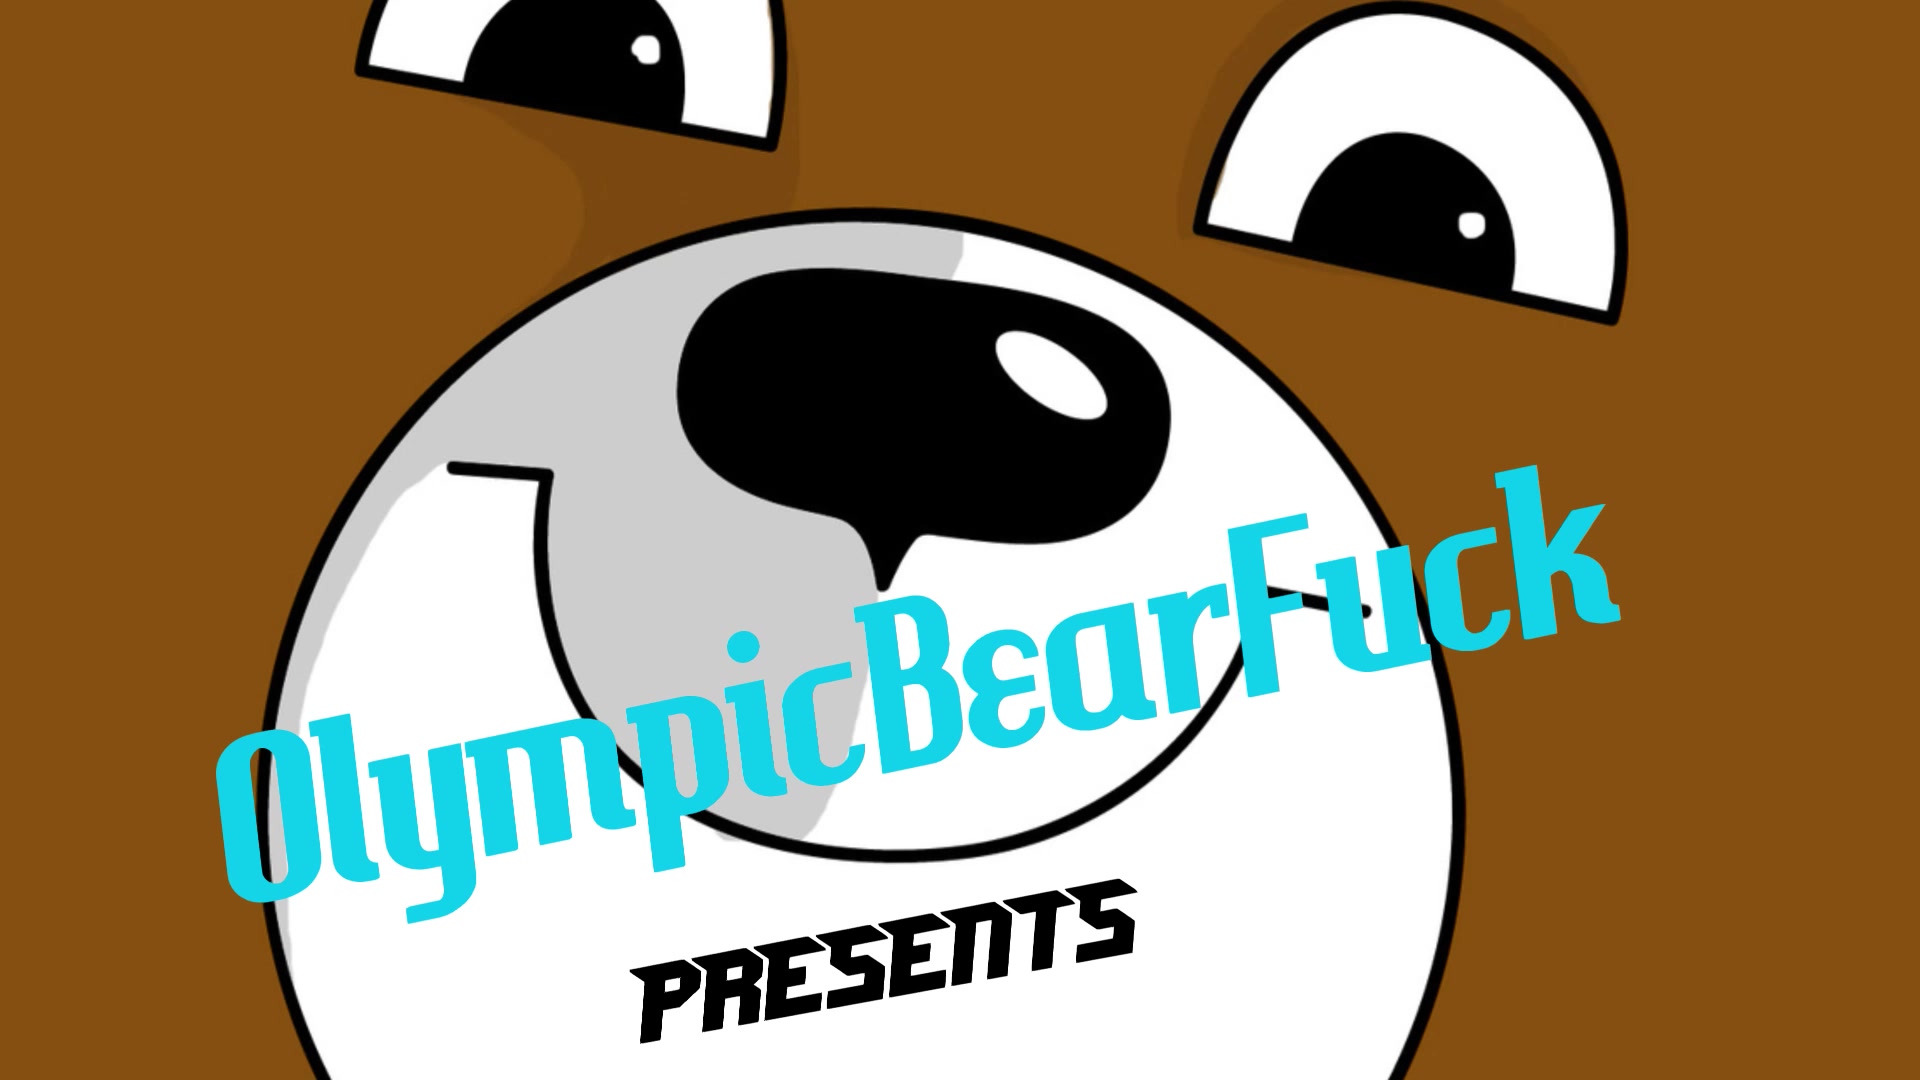 OLYMPICBEARFUCK -  Bear stuffing